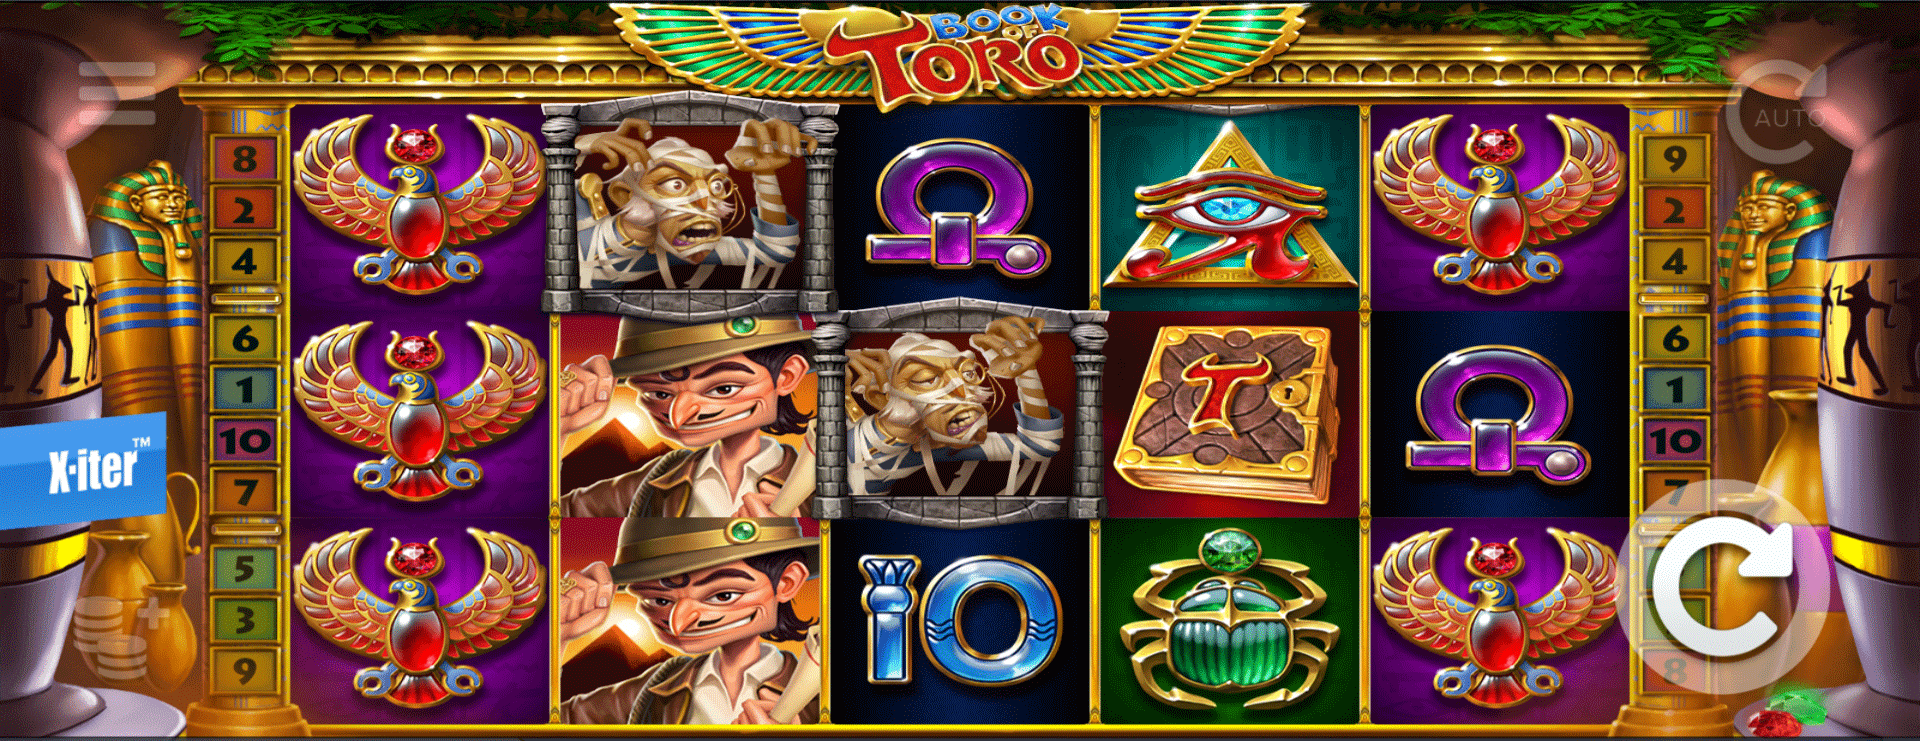 griglia di gioco della slot machine book of toro